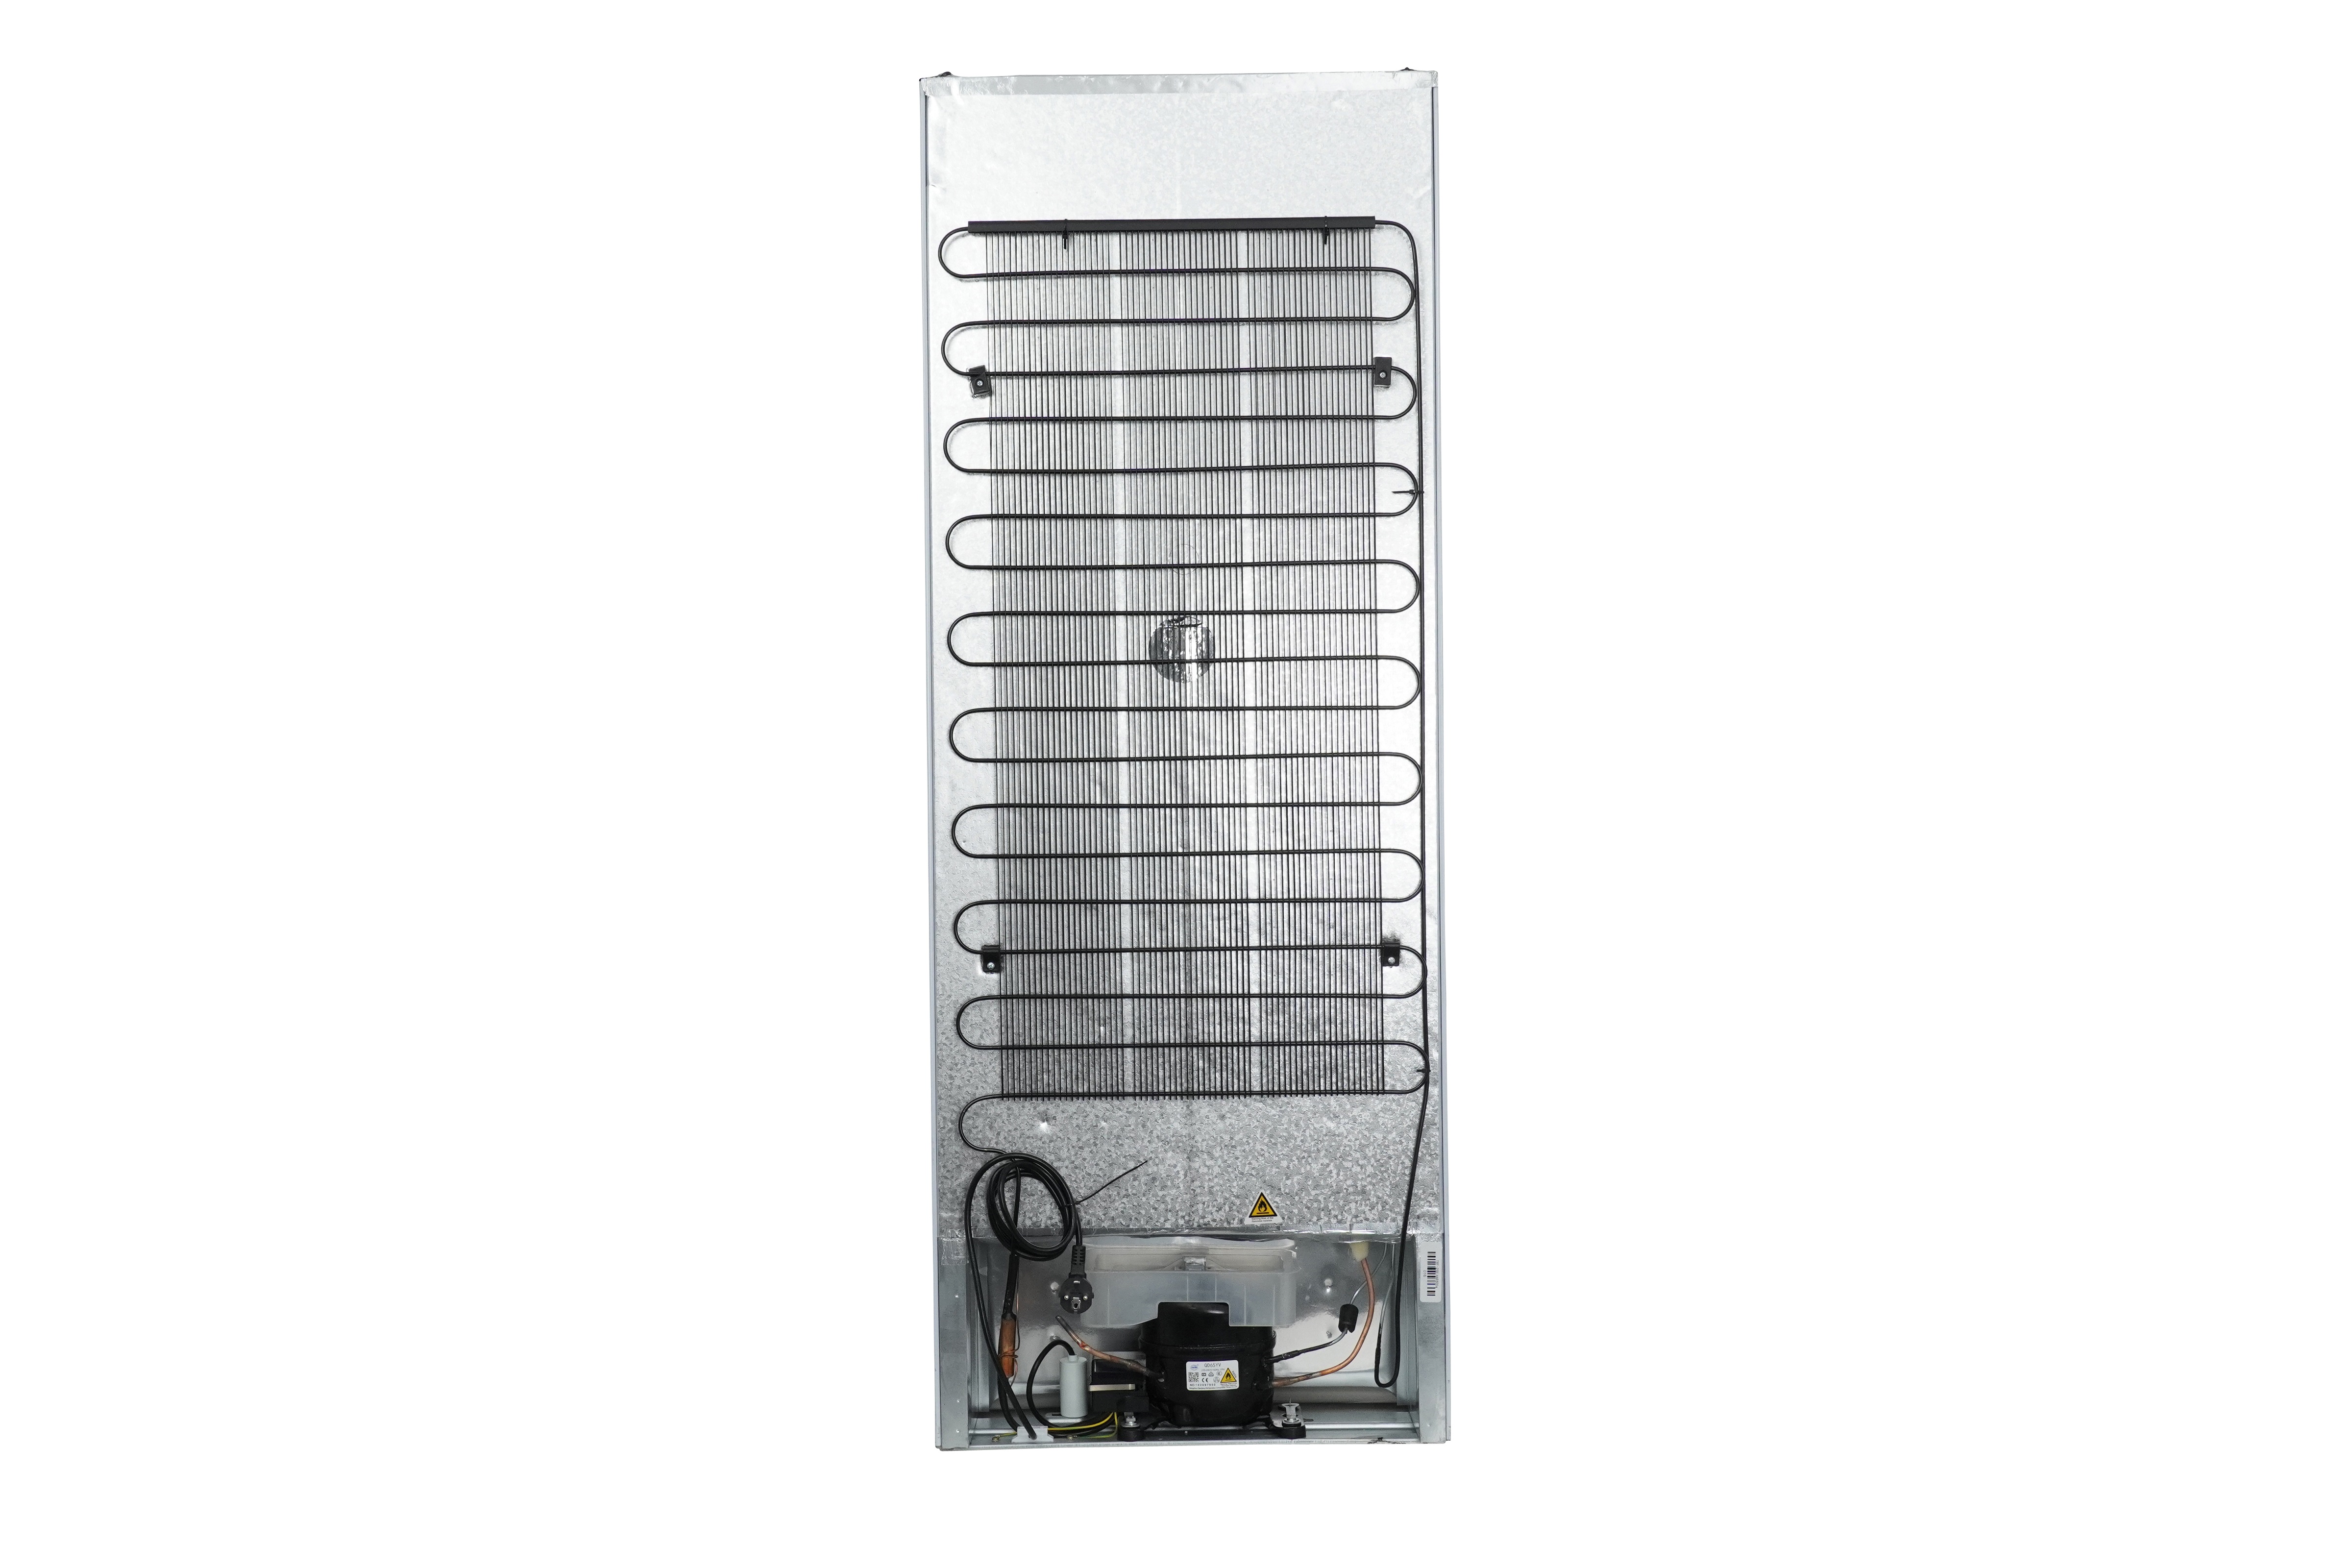 Kühlschrank 4* Gefrierfach Einbaukühlschrank Schlepptür 144 cm Respekta